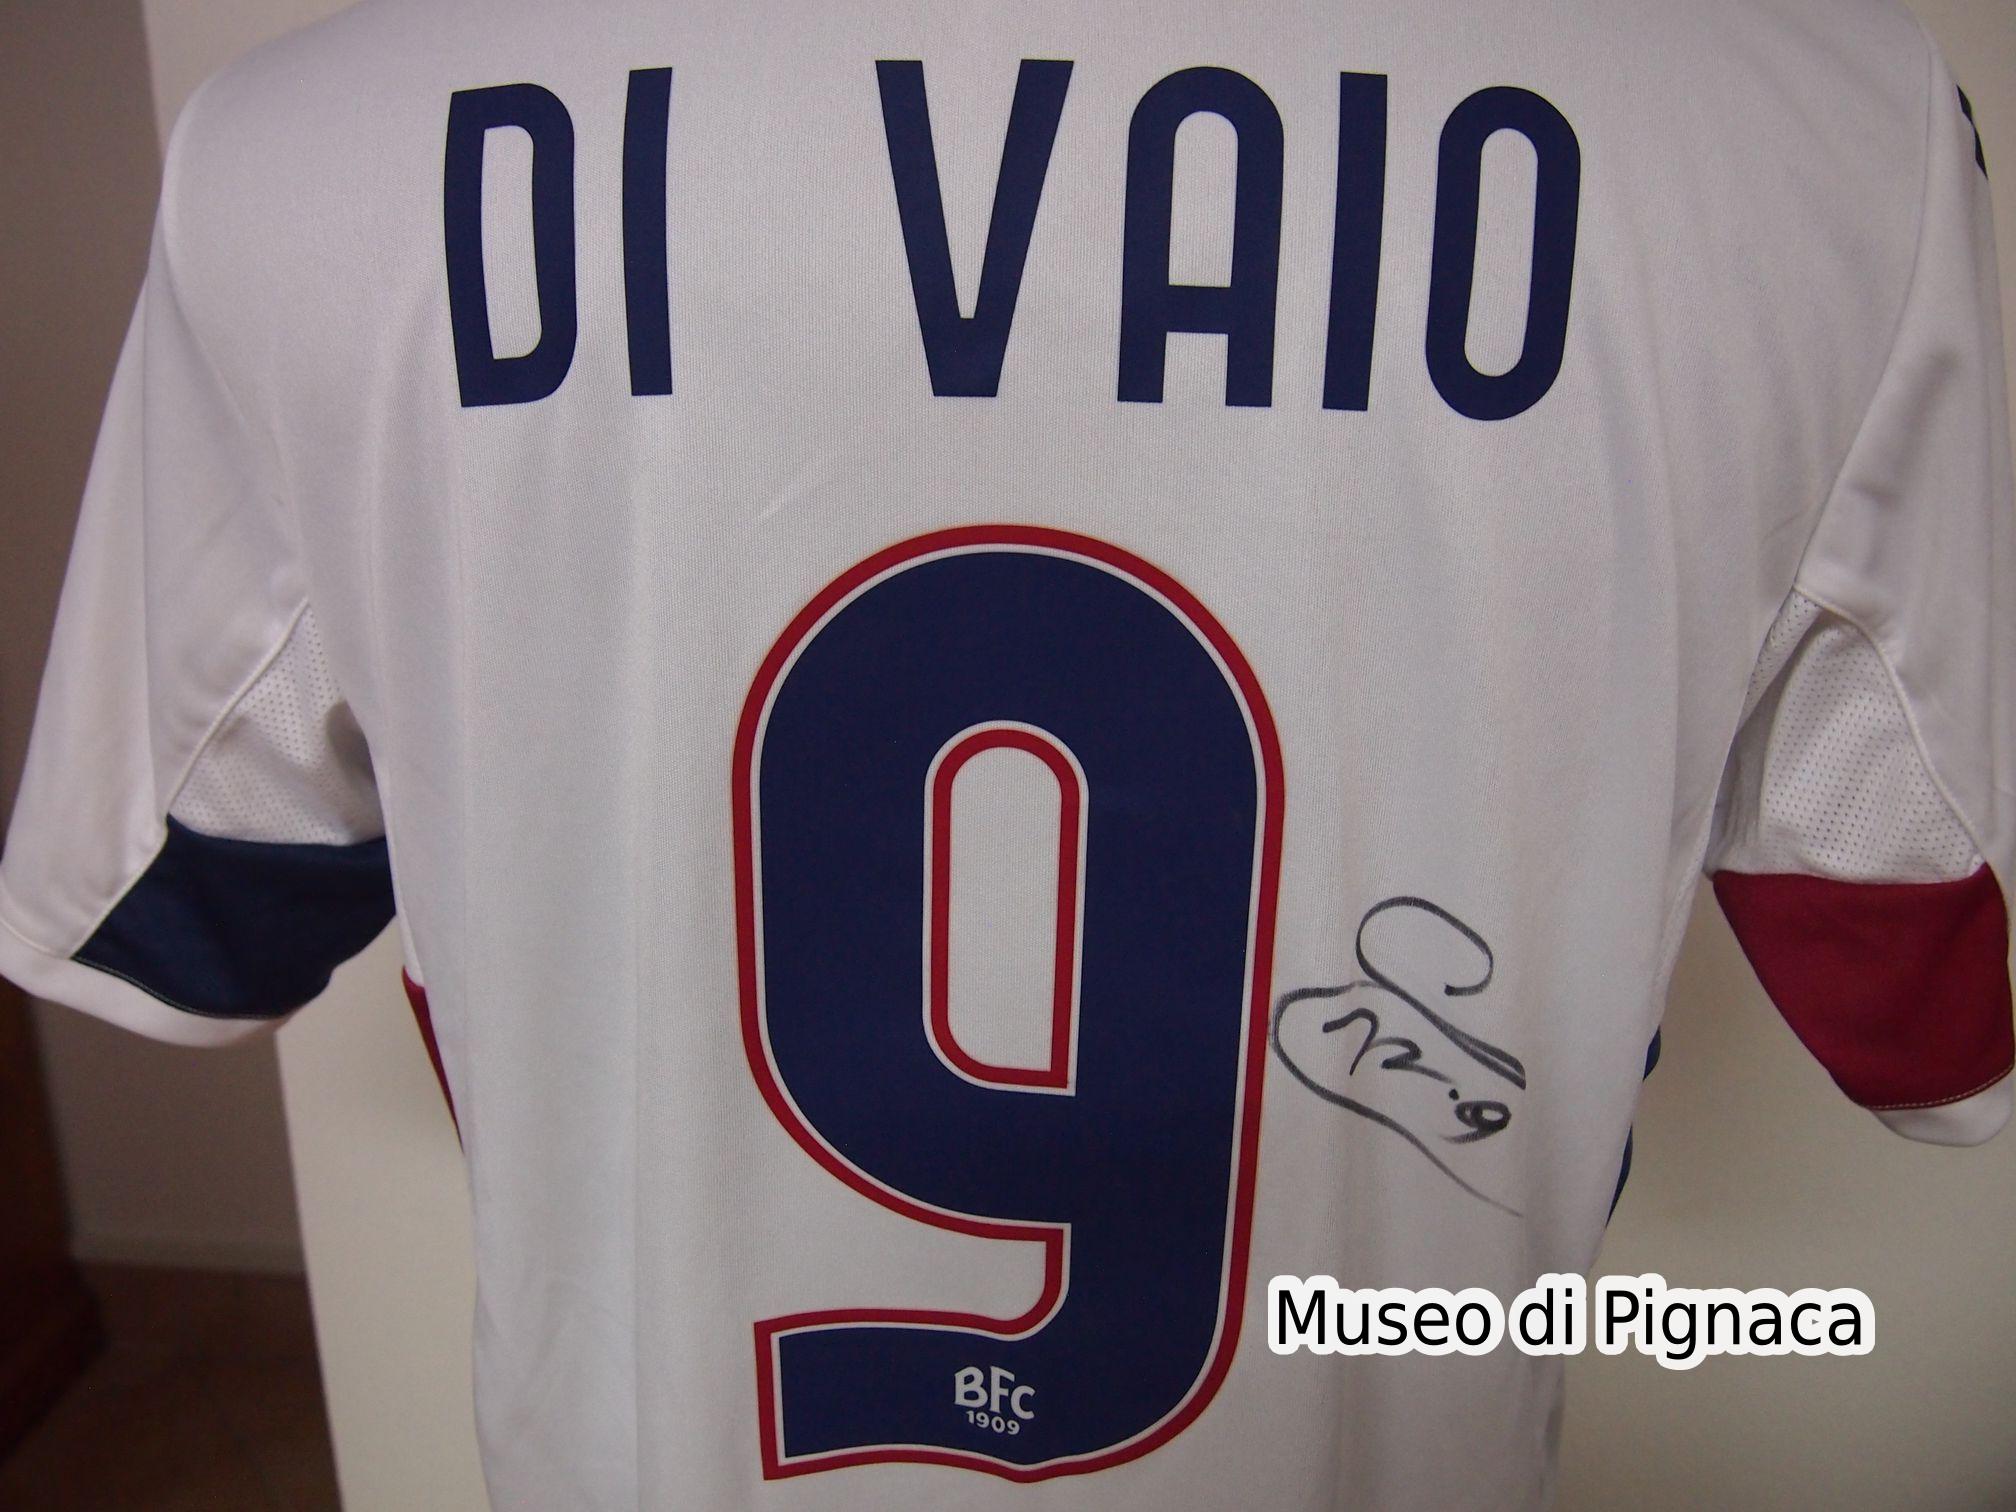 Marco Di Vaio - Maglia bianca Bologna FC 2011-12 (dettaglio autografo)